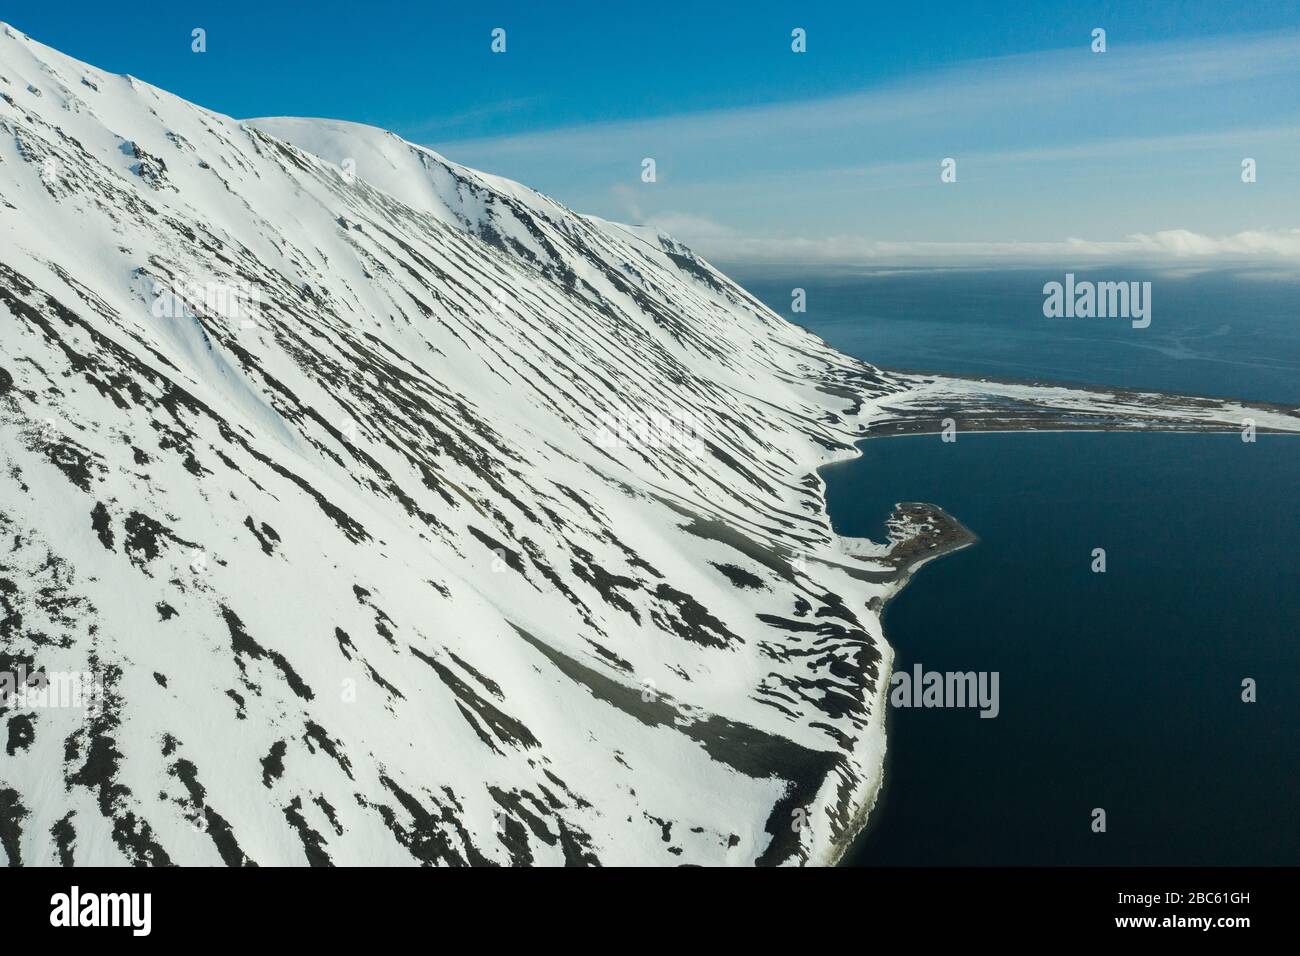 La côte montagneuse de la mer couverte de neige par un temps ensoleillé. Lieu de tournage sur la côte nord de la mer de Béring, région de Chukchi, Russie. Banque D'Images